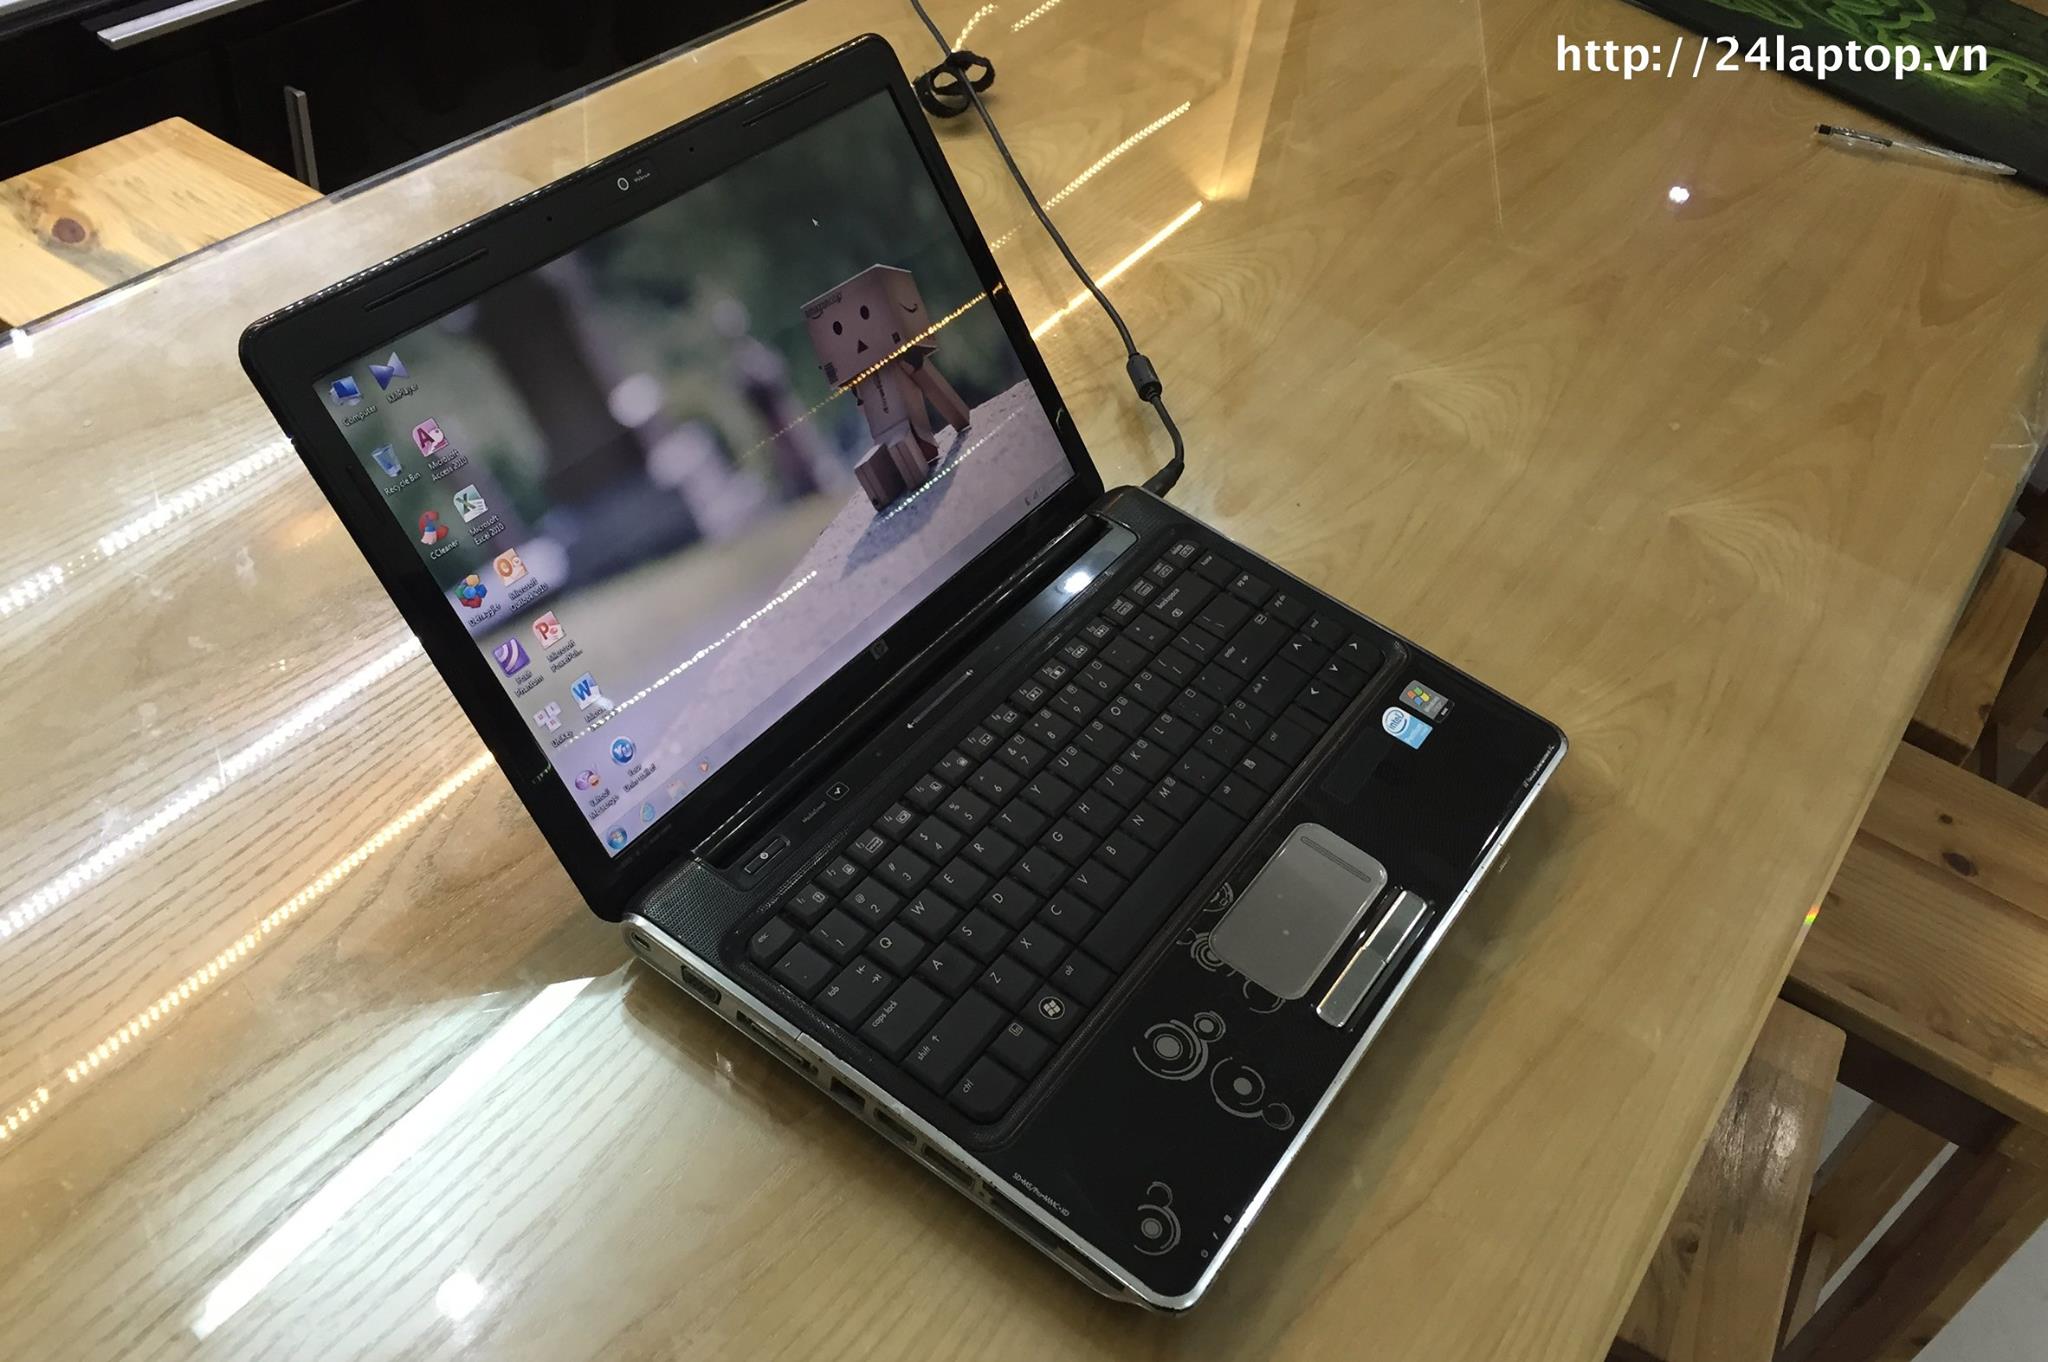 Laptop HP Pavilion DV4 _1.jpg